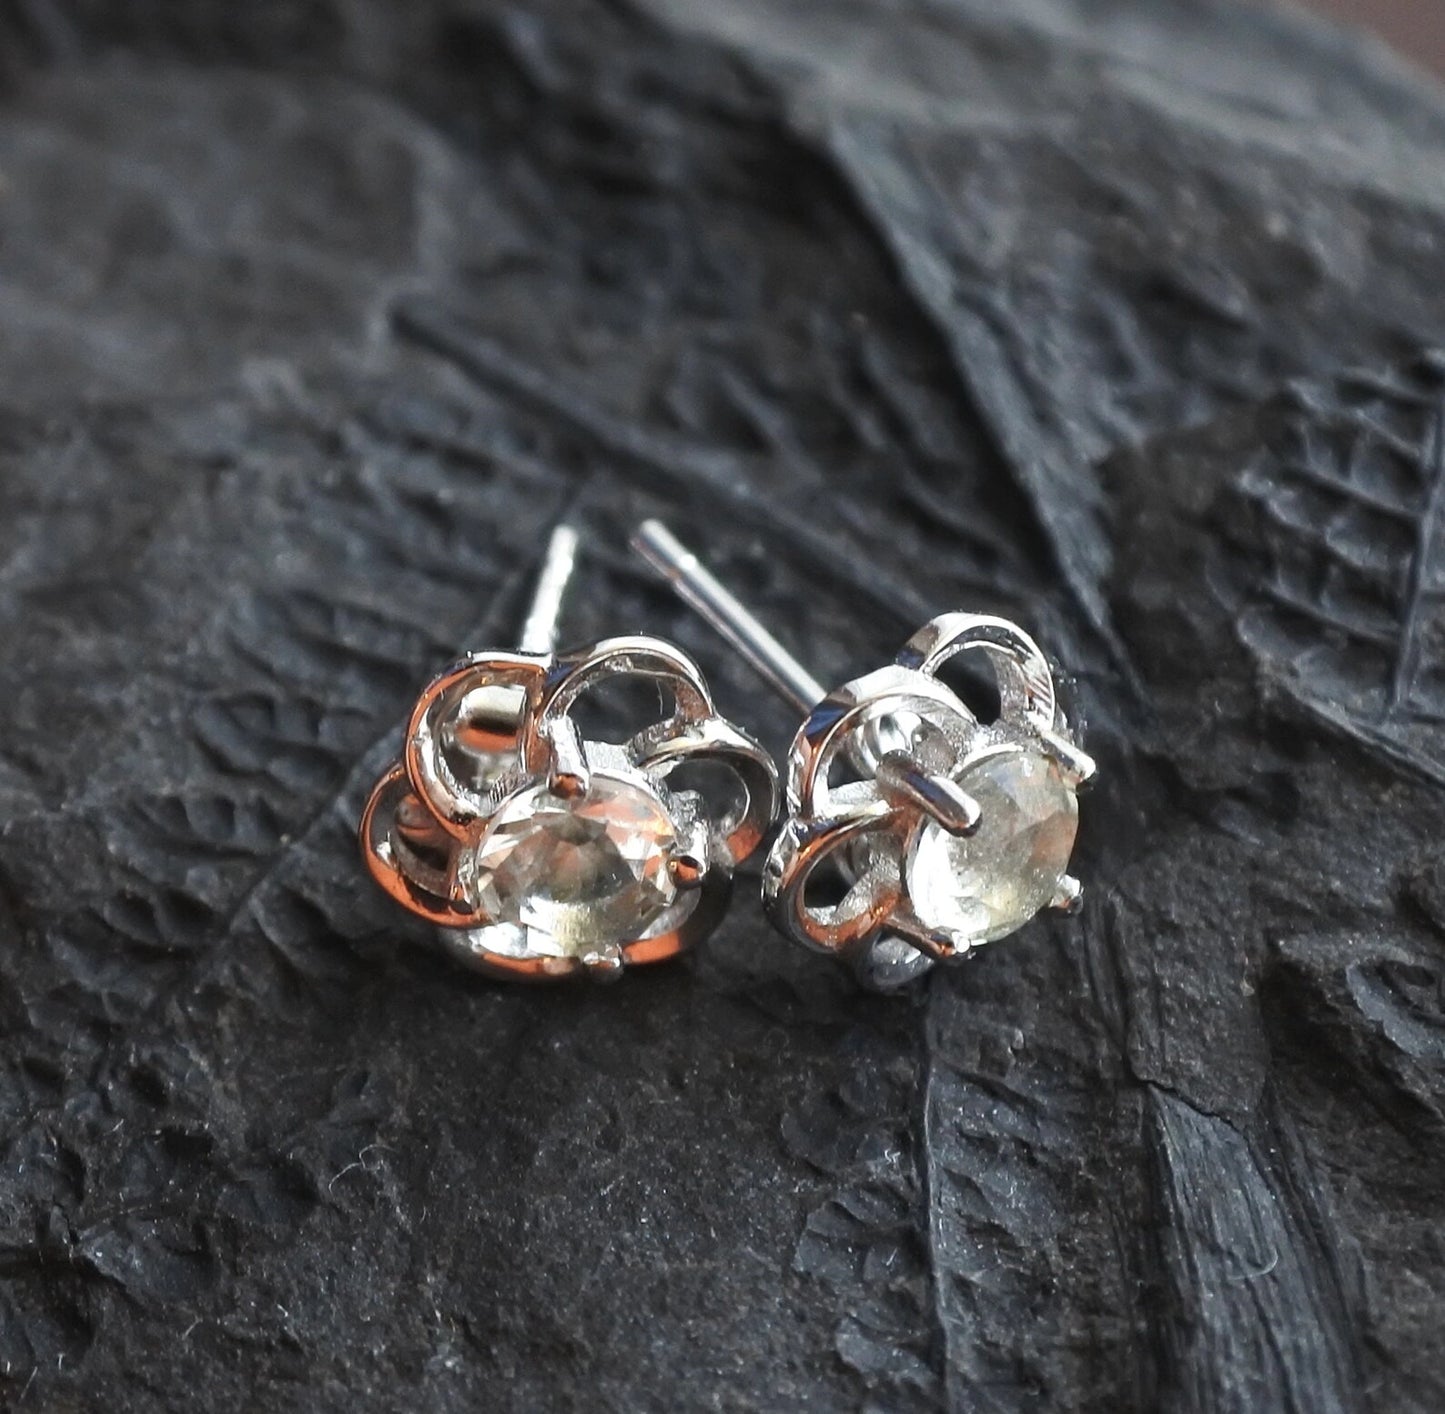 4 mm Libyan Desert Glass Stud Earrings Sterling Silver jewelry tektite Libyan Glass, genuine Impact Glass gemstone earrings gift